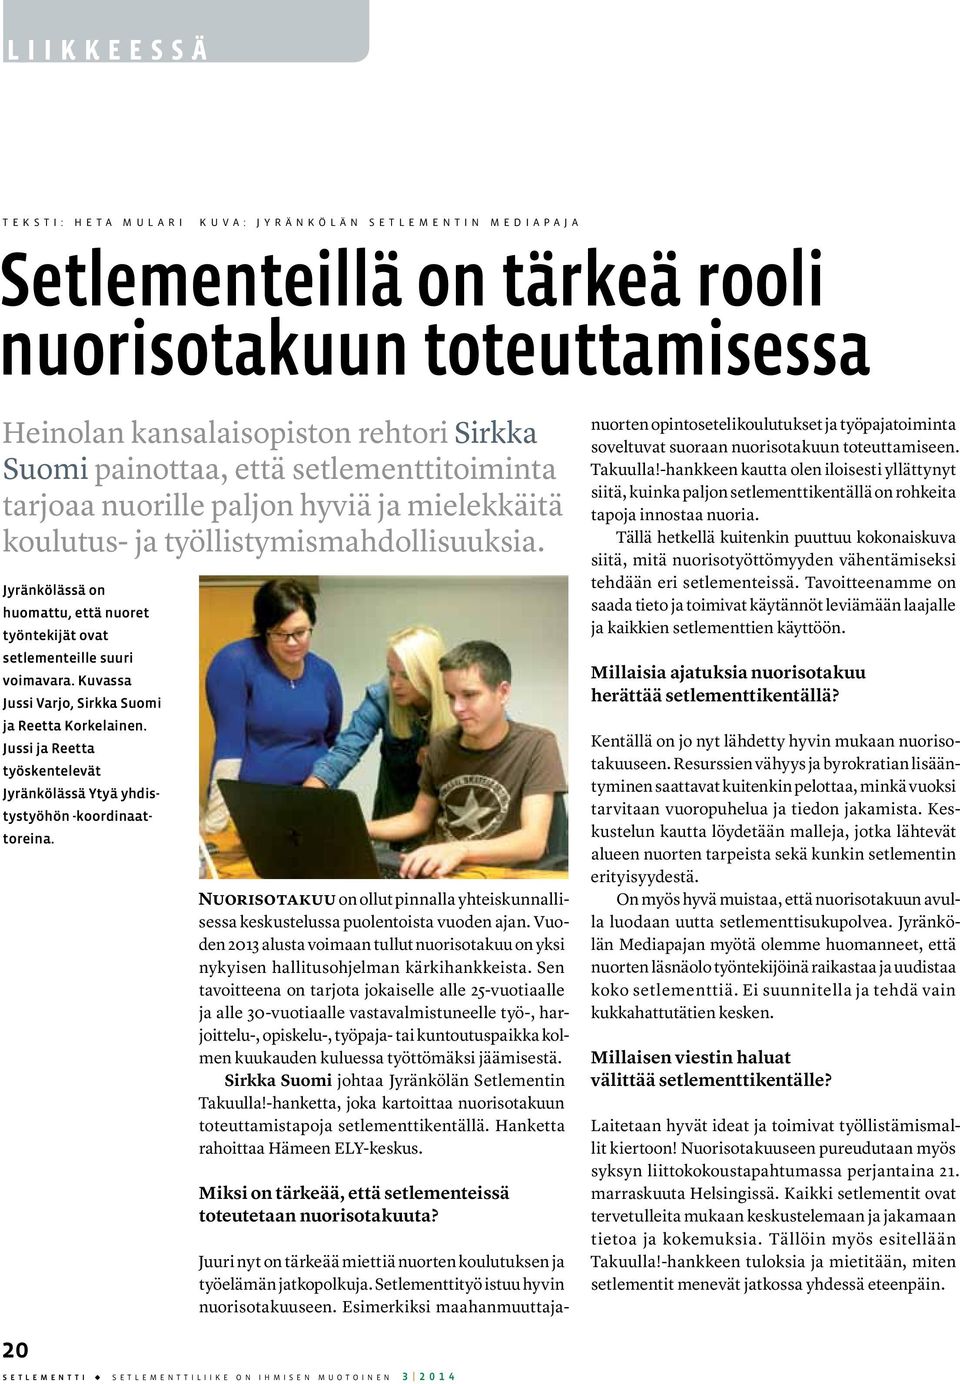 Jyränkölässä on huomattu, että nuoret työntekijät ovat setlementeille suuri voimavara. Kuvassa Jussi Varjo, Sirkka Suomi ja Reetta Korkelainen.